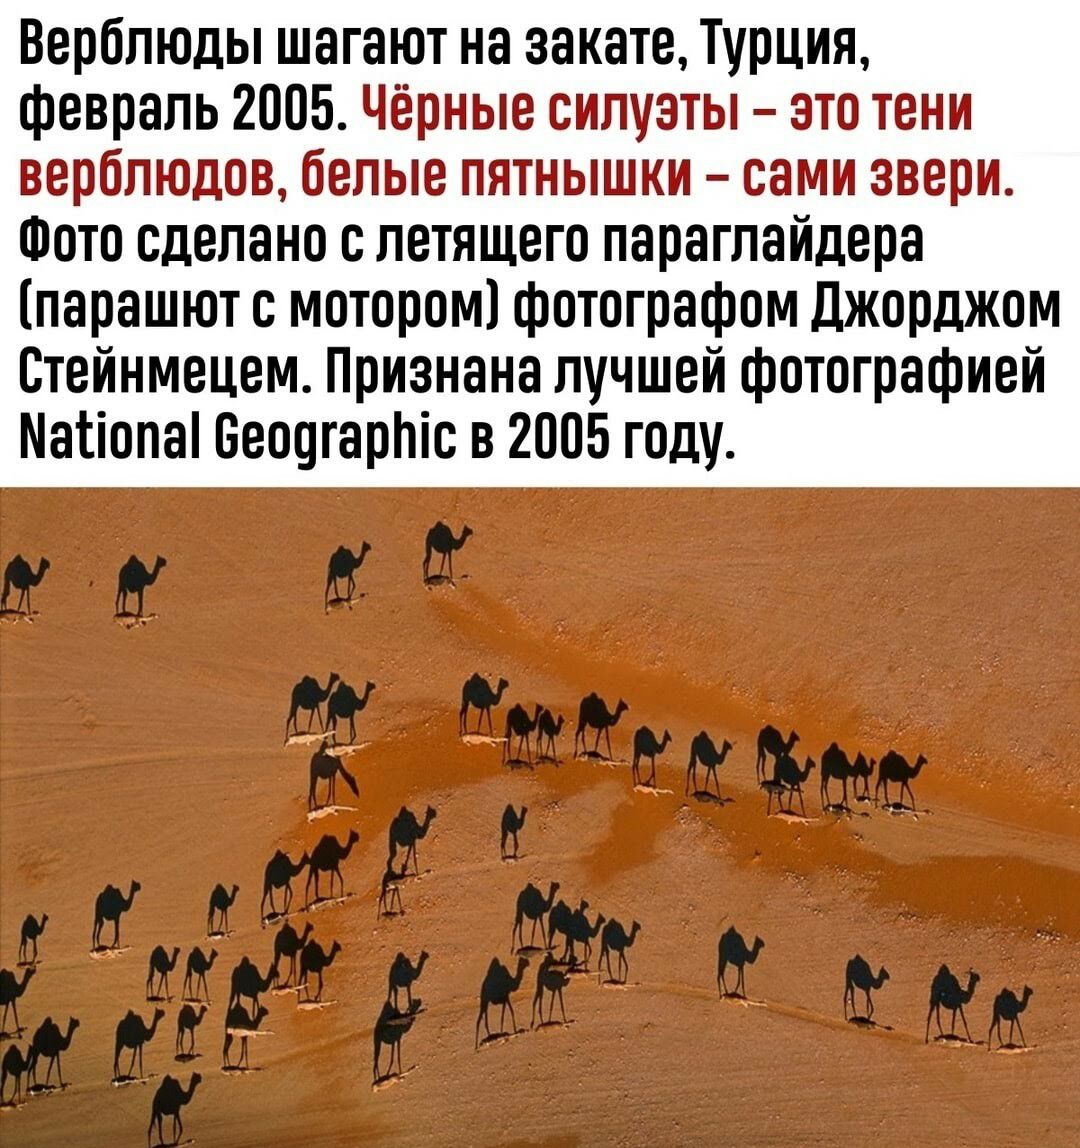 Верблюды шагают на закате Турция февраль 2005 парашют с мотором1фотографпм джорджом Стейнмецем Признана лучшей фотографией Магіопаі Беошарйіс в 2005 году тв Лима _ ЕЁ